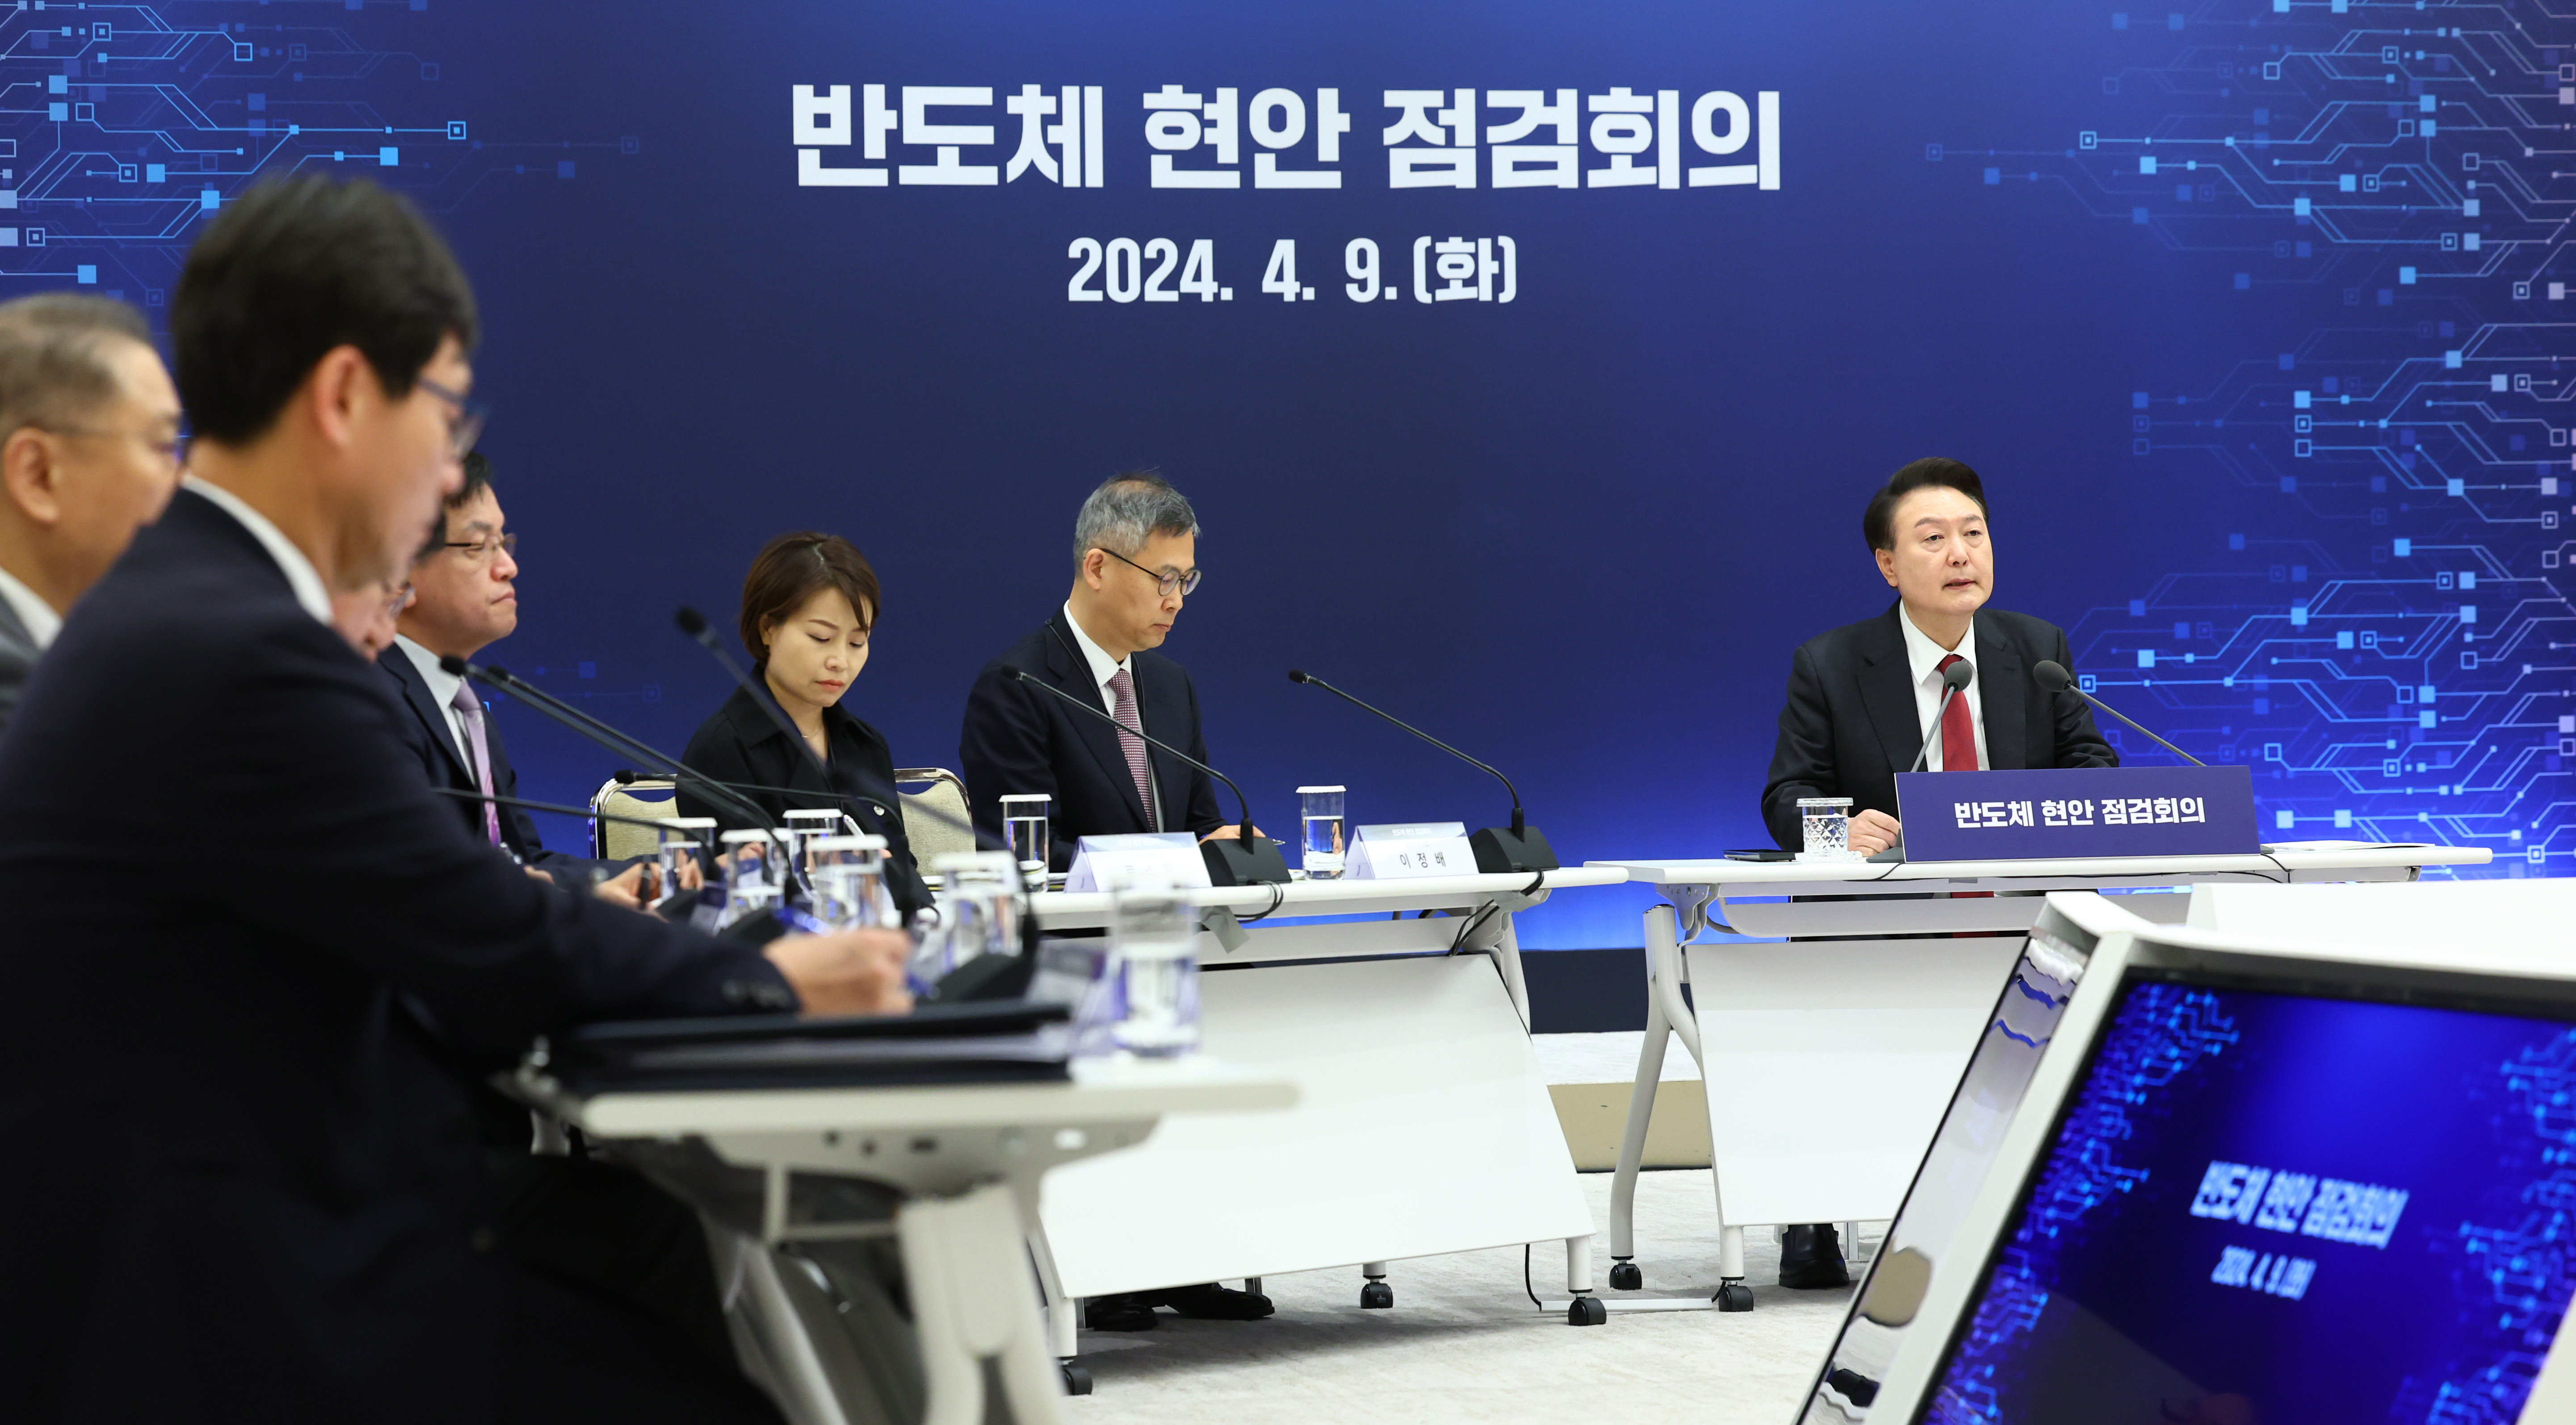 Le président Yoon Suk Yeol s'exprime lors d'une réunion sur les semi-conducteurs au bureau présidentiel de Yongsan à Séoul, le 9 mars 2024. Le gouvernement a présenté sa feuille de route promotion de trois technologies d'avenir, l'intelligence artificielle, les semi-conducteurs et les technologies biologiques.